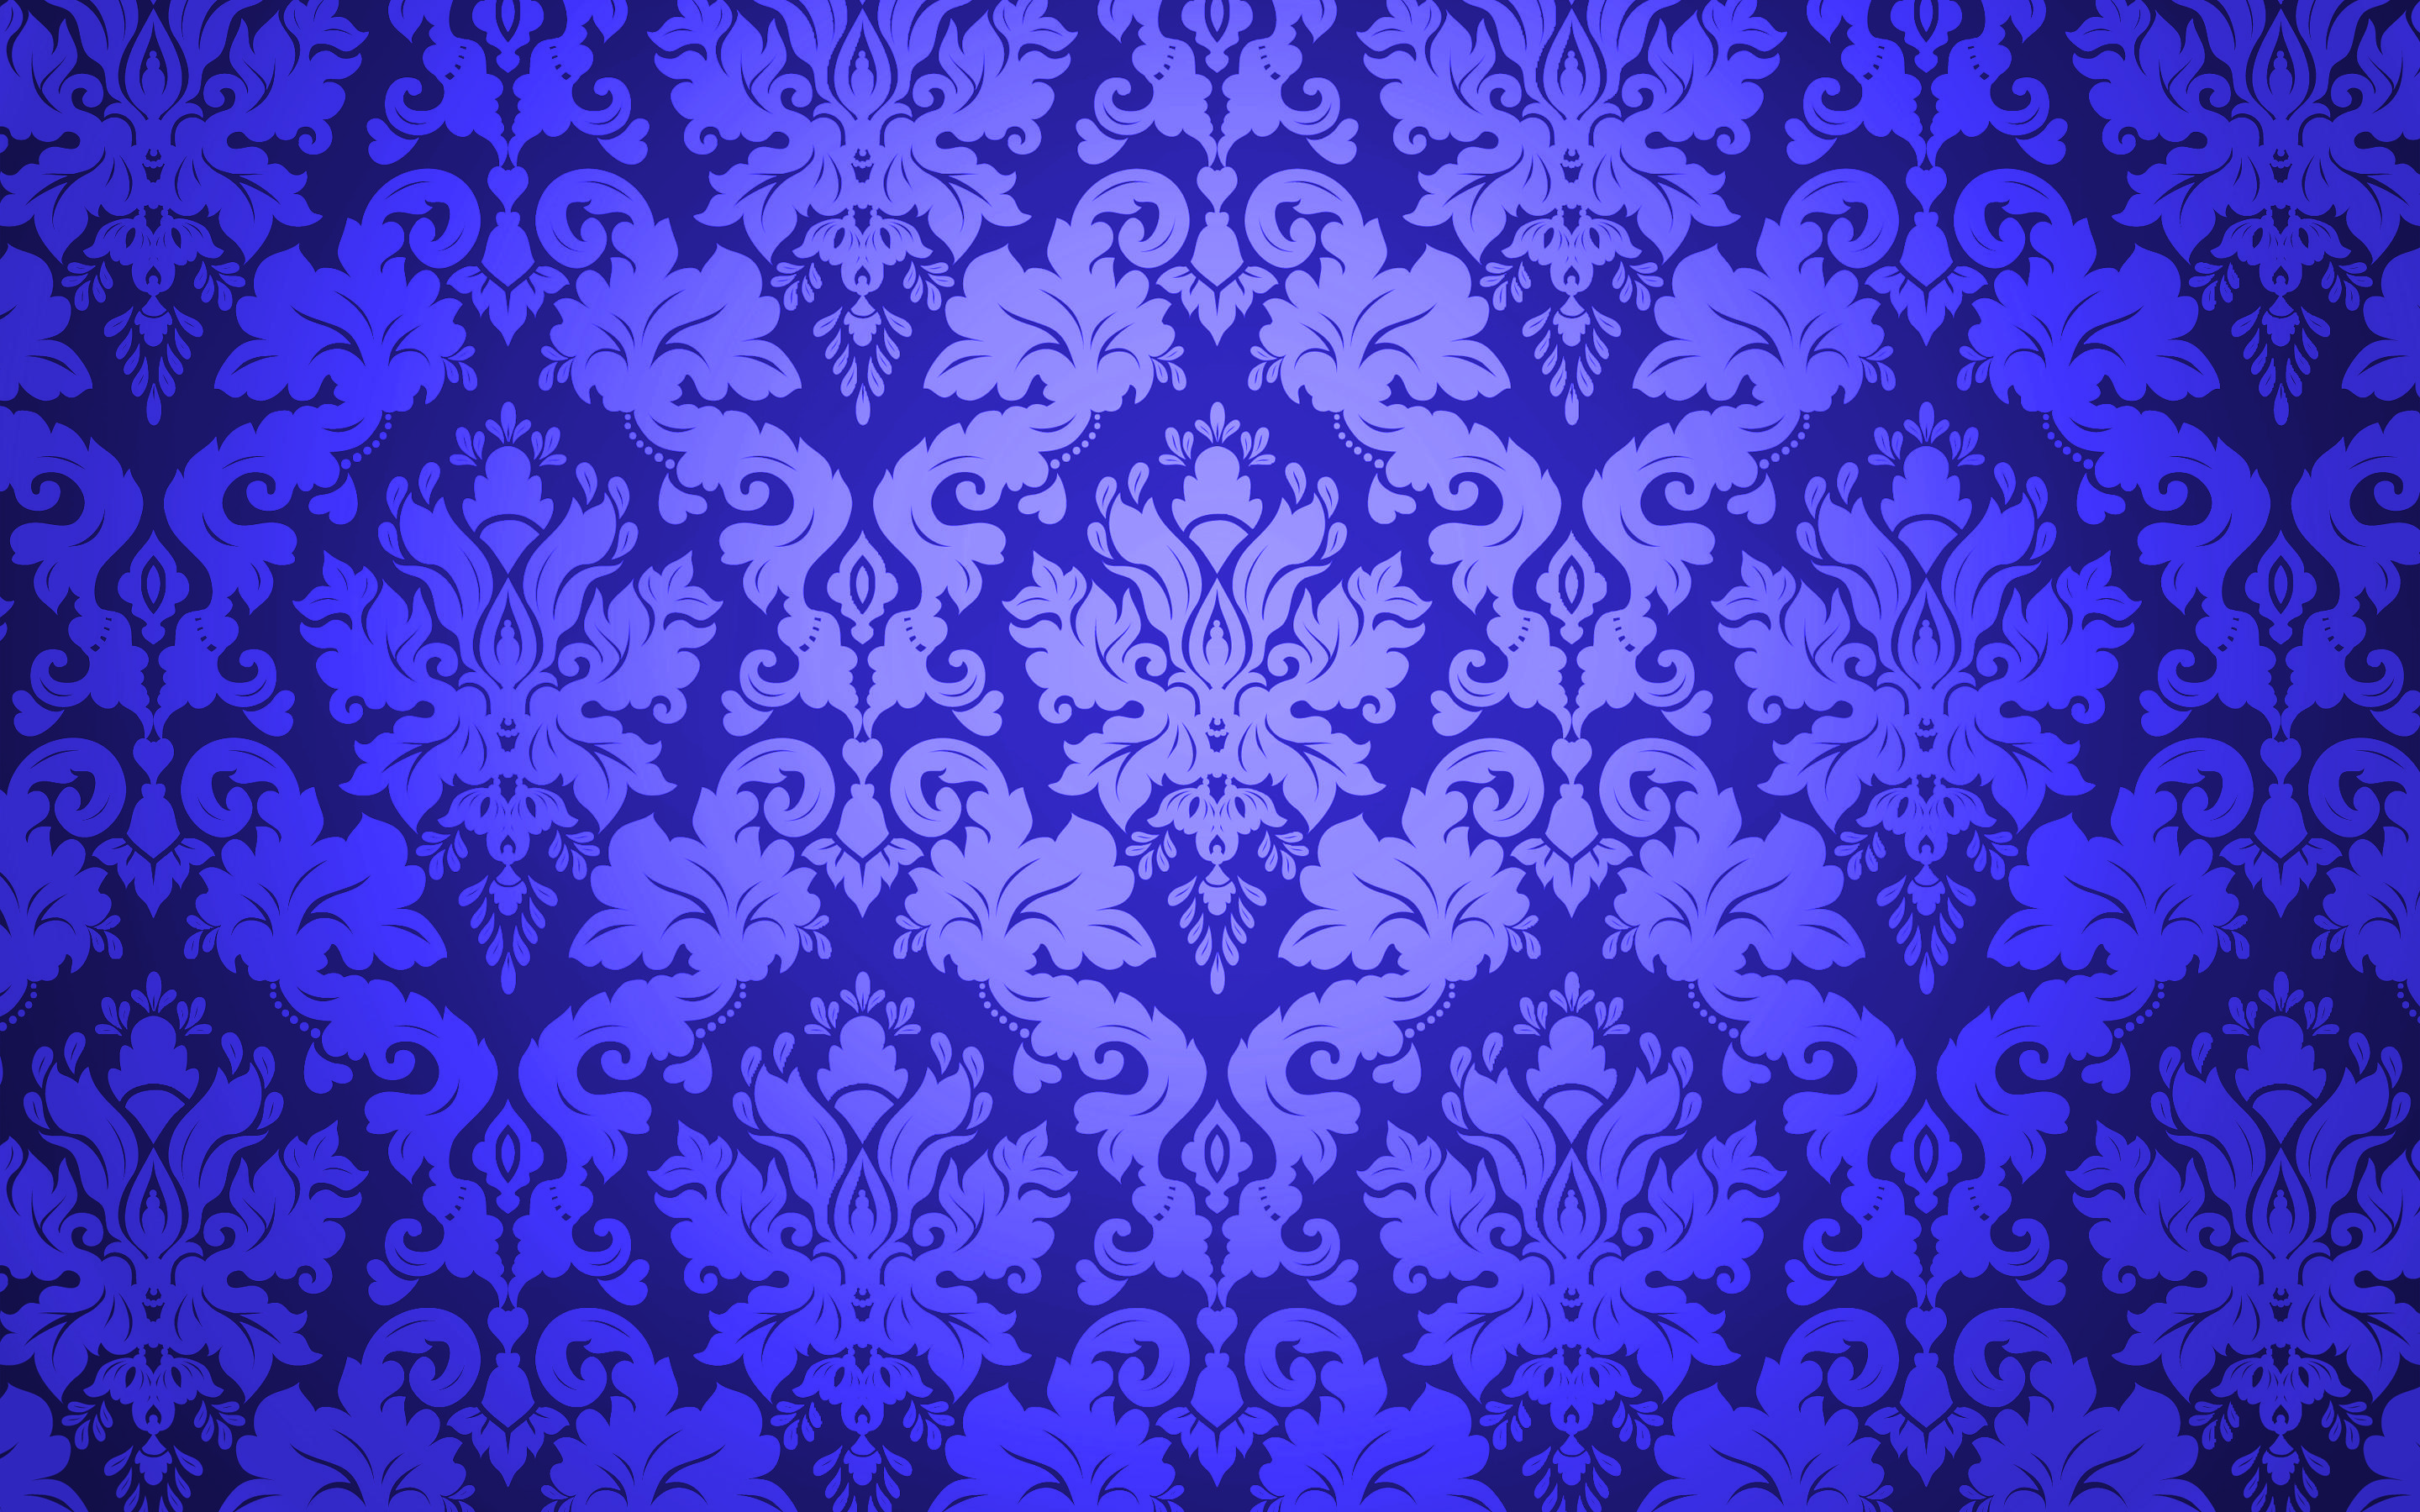 Download wallpaper purple damask background, damask floral